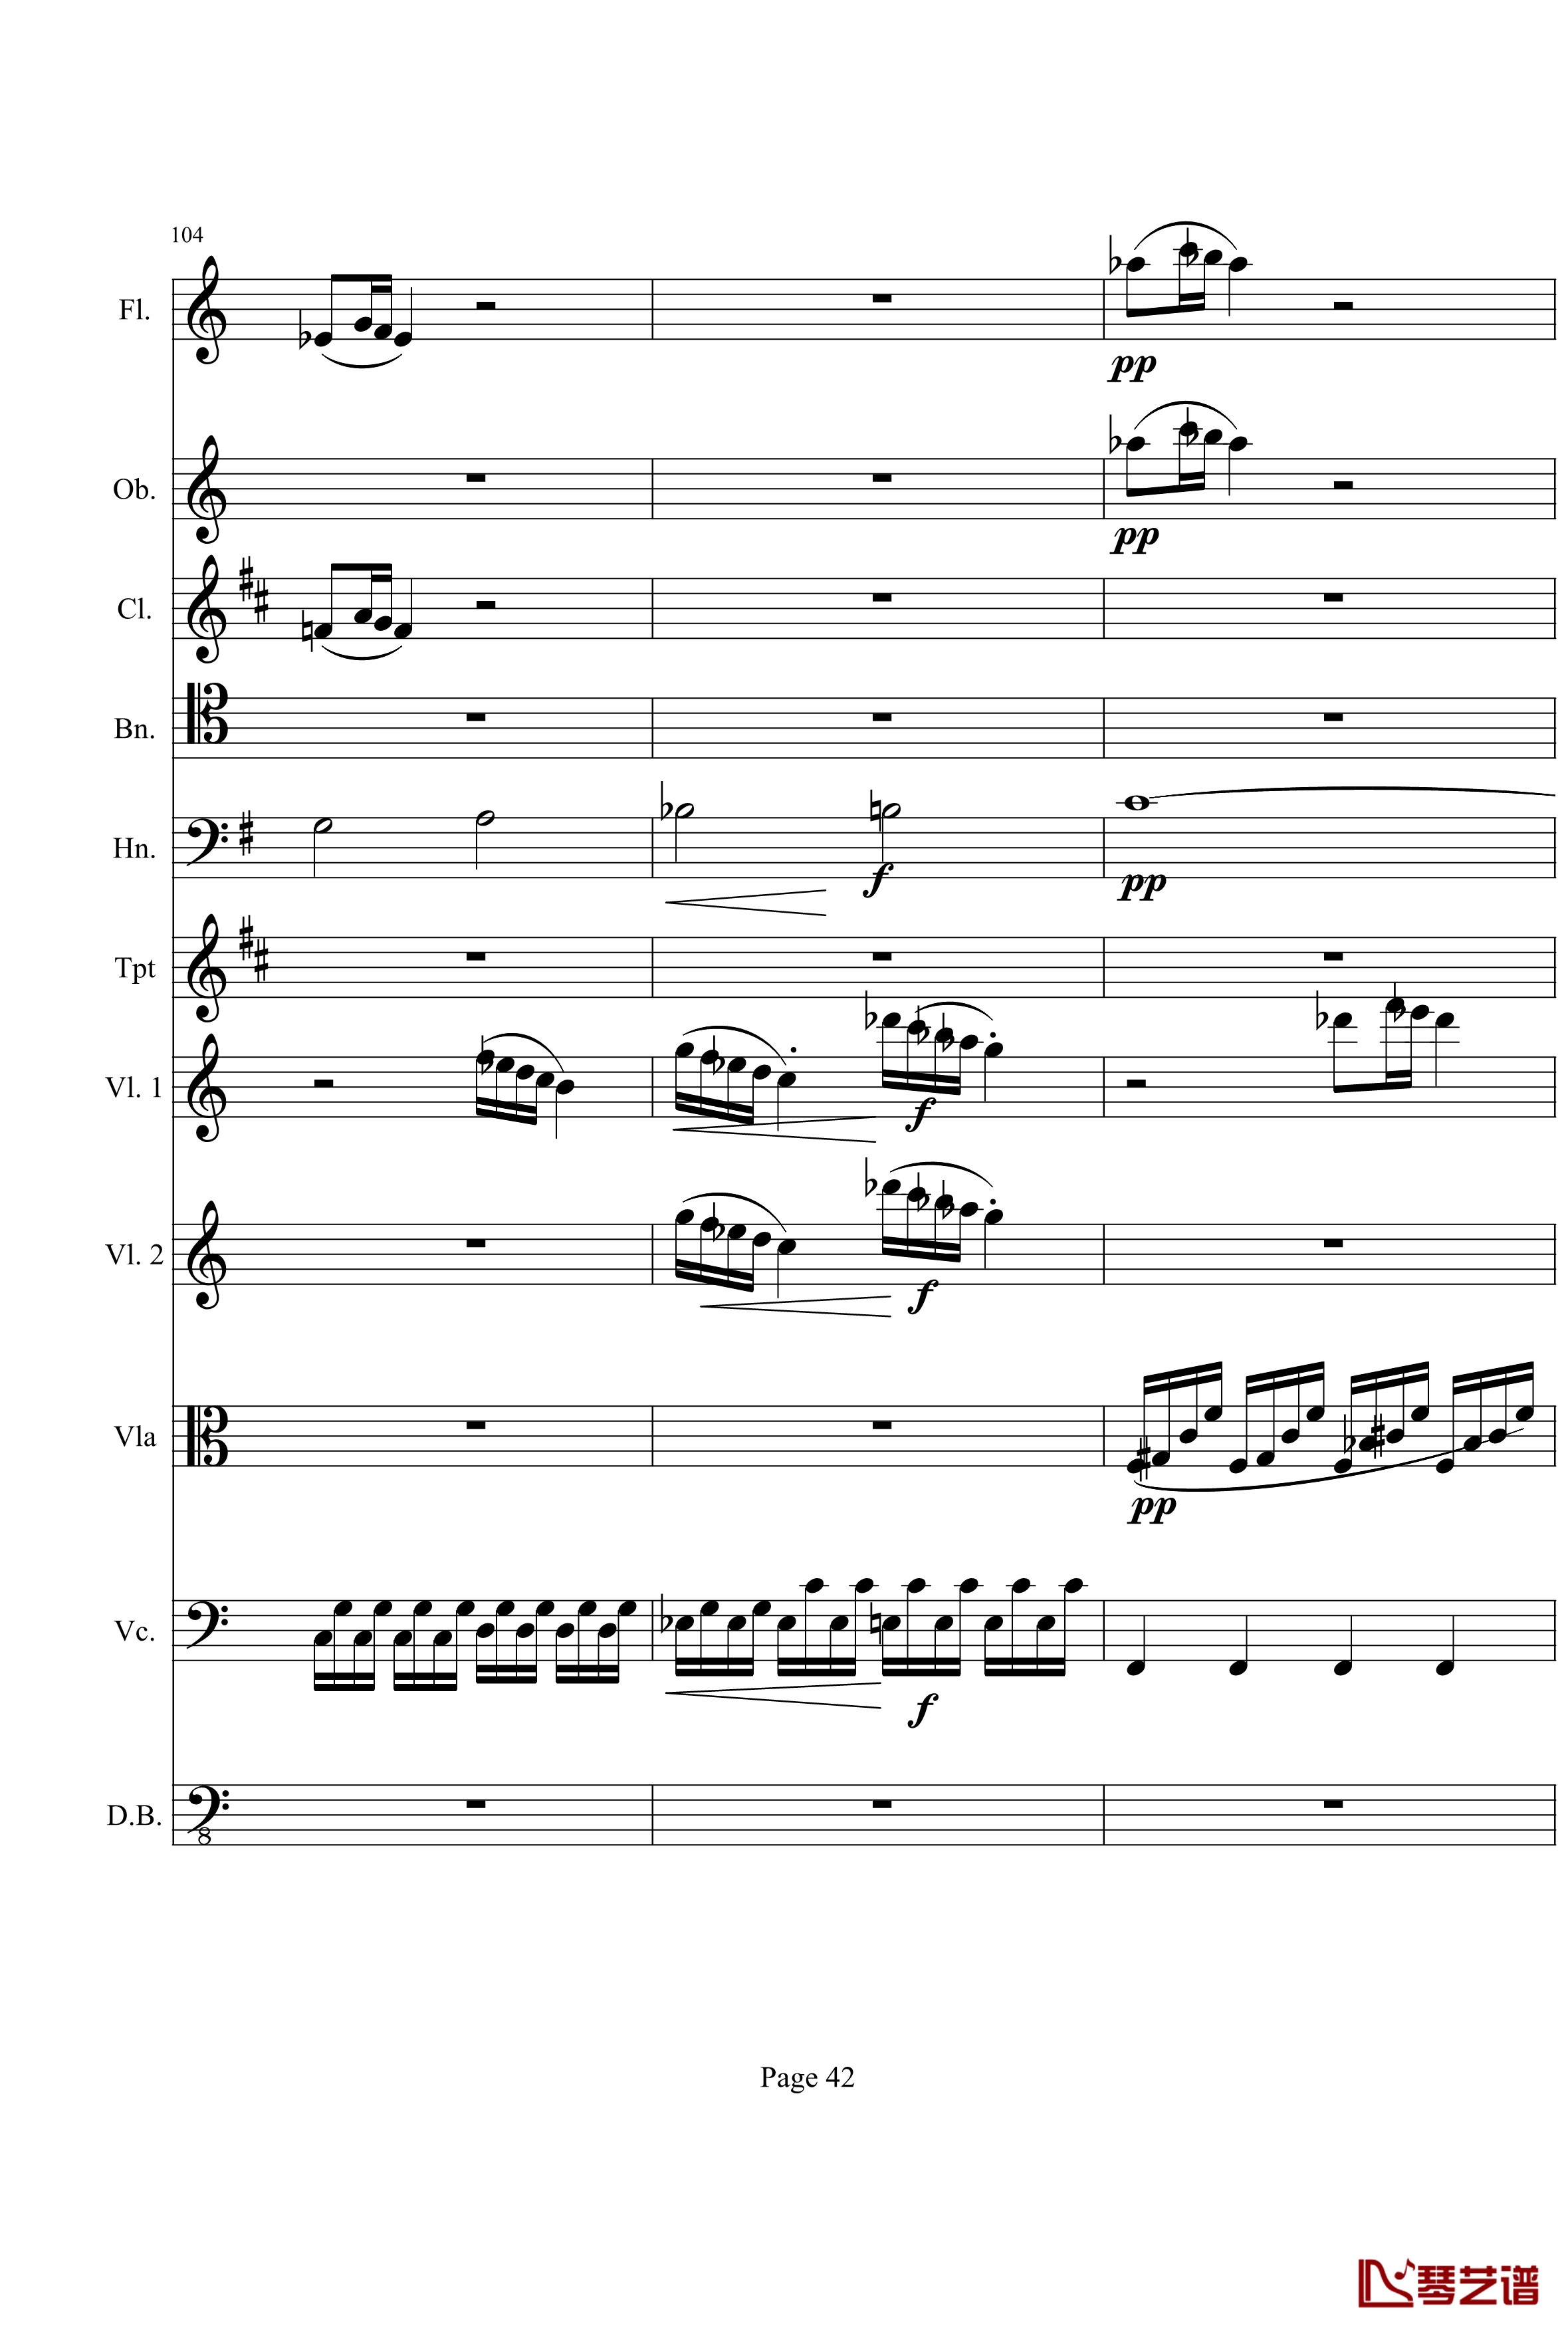 奏鸣曲之交响钢琴谱-第21-Ⅰ-贝多芬-beethoven42